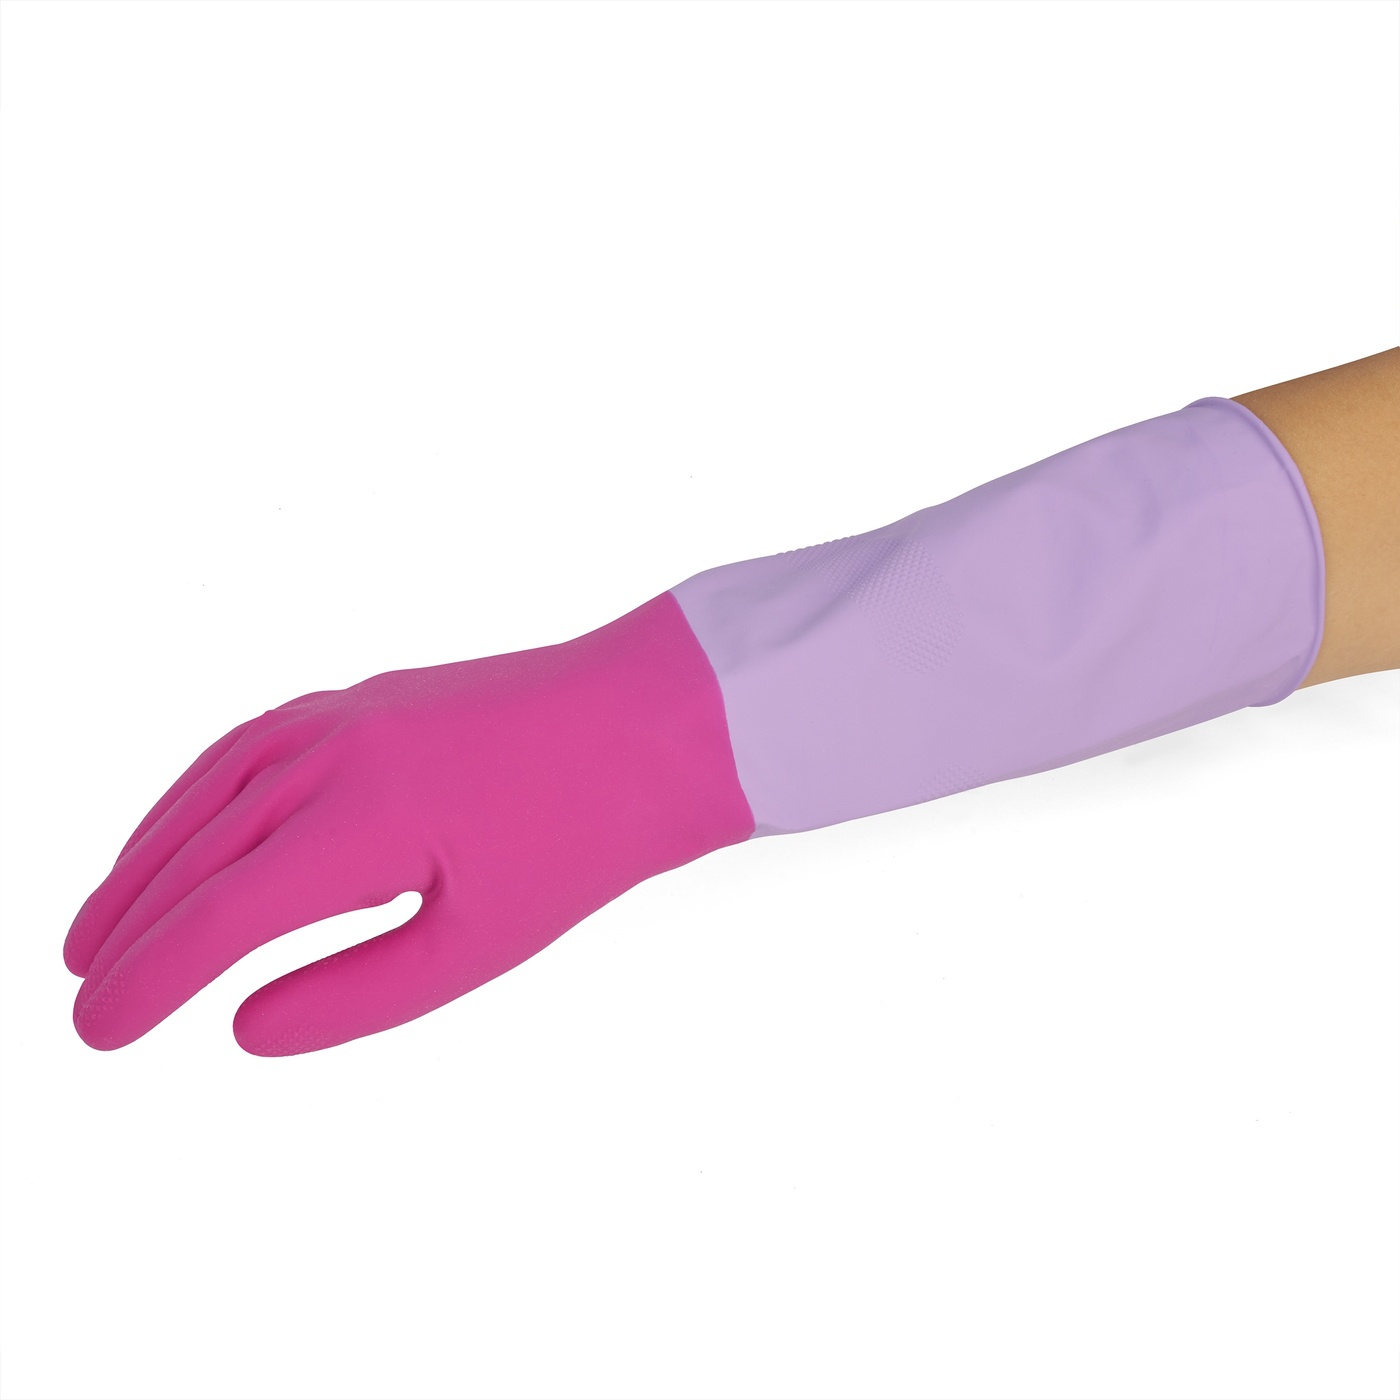 Voňavé gumené rukavice York Rosie veľkosť S